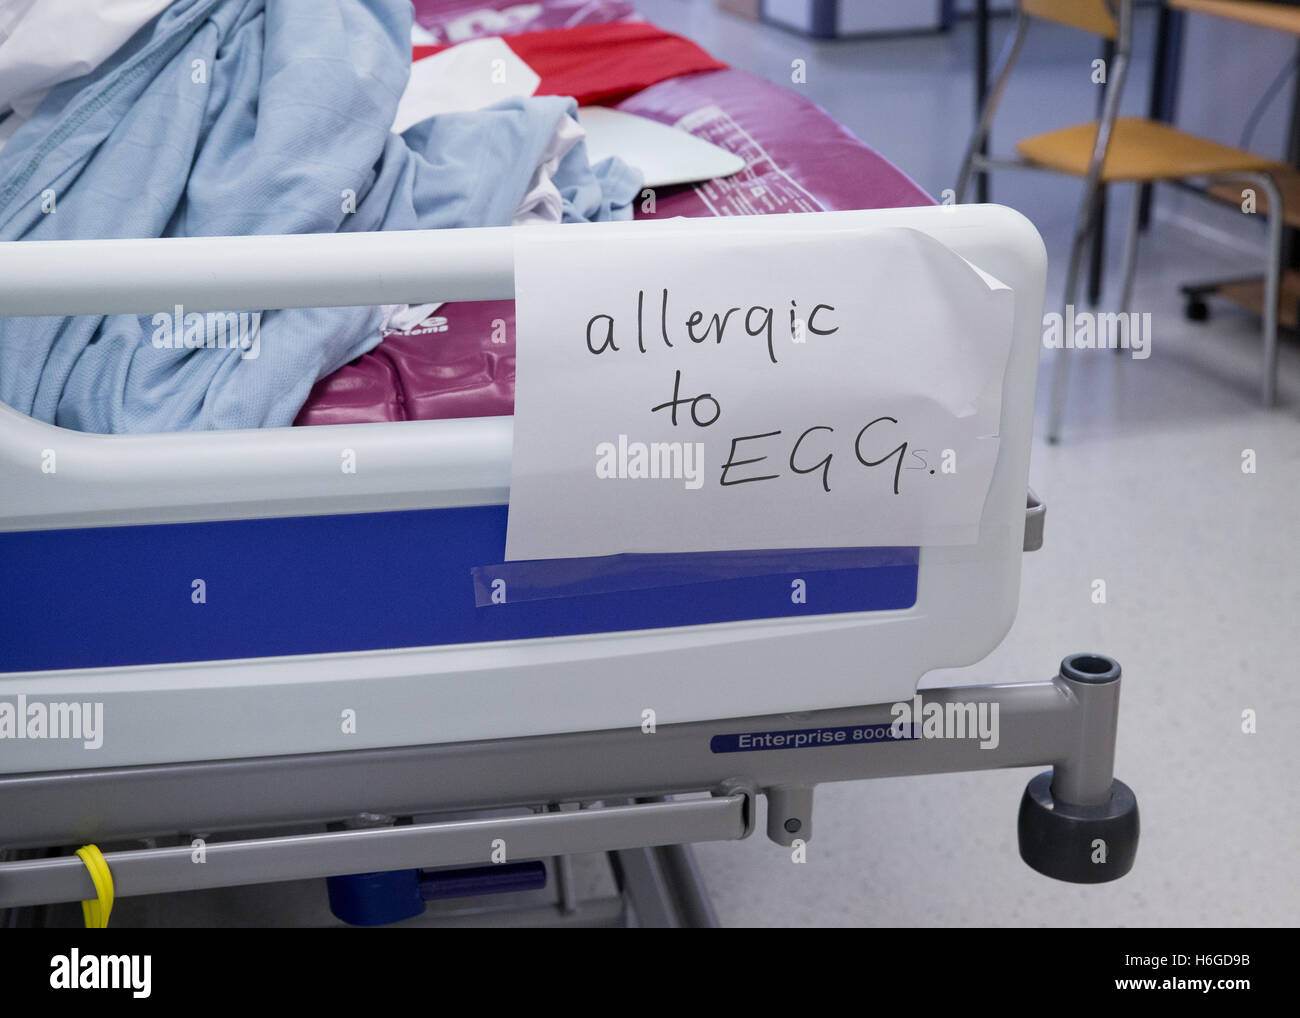 'Allergiques aux oeufs' signe sur les patients' bed in hospital ward Banque D'Images